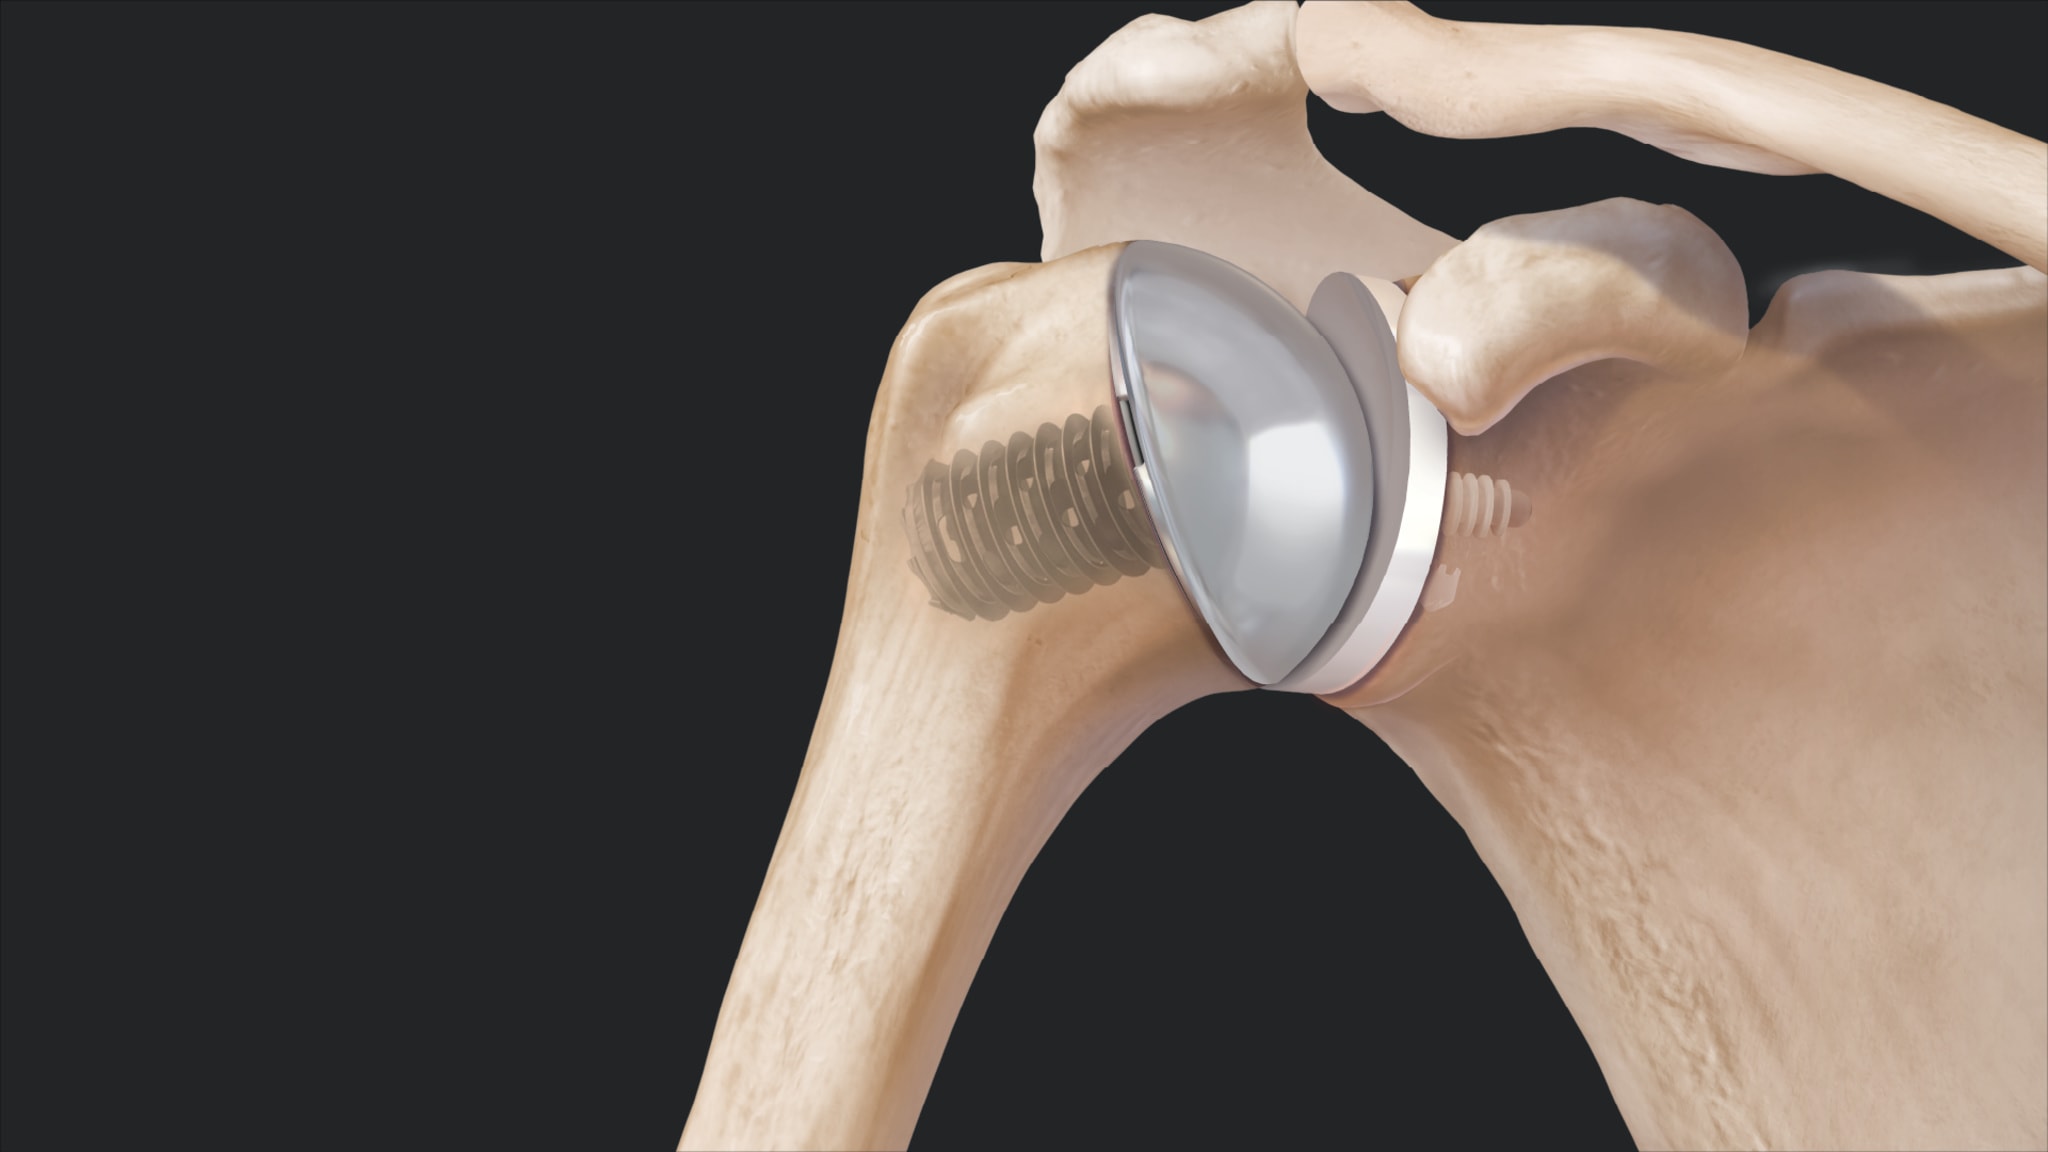 Eclipse™ Stemless Shoulder Arthroplasty System